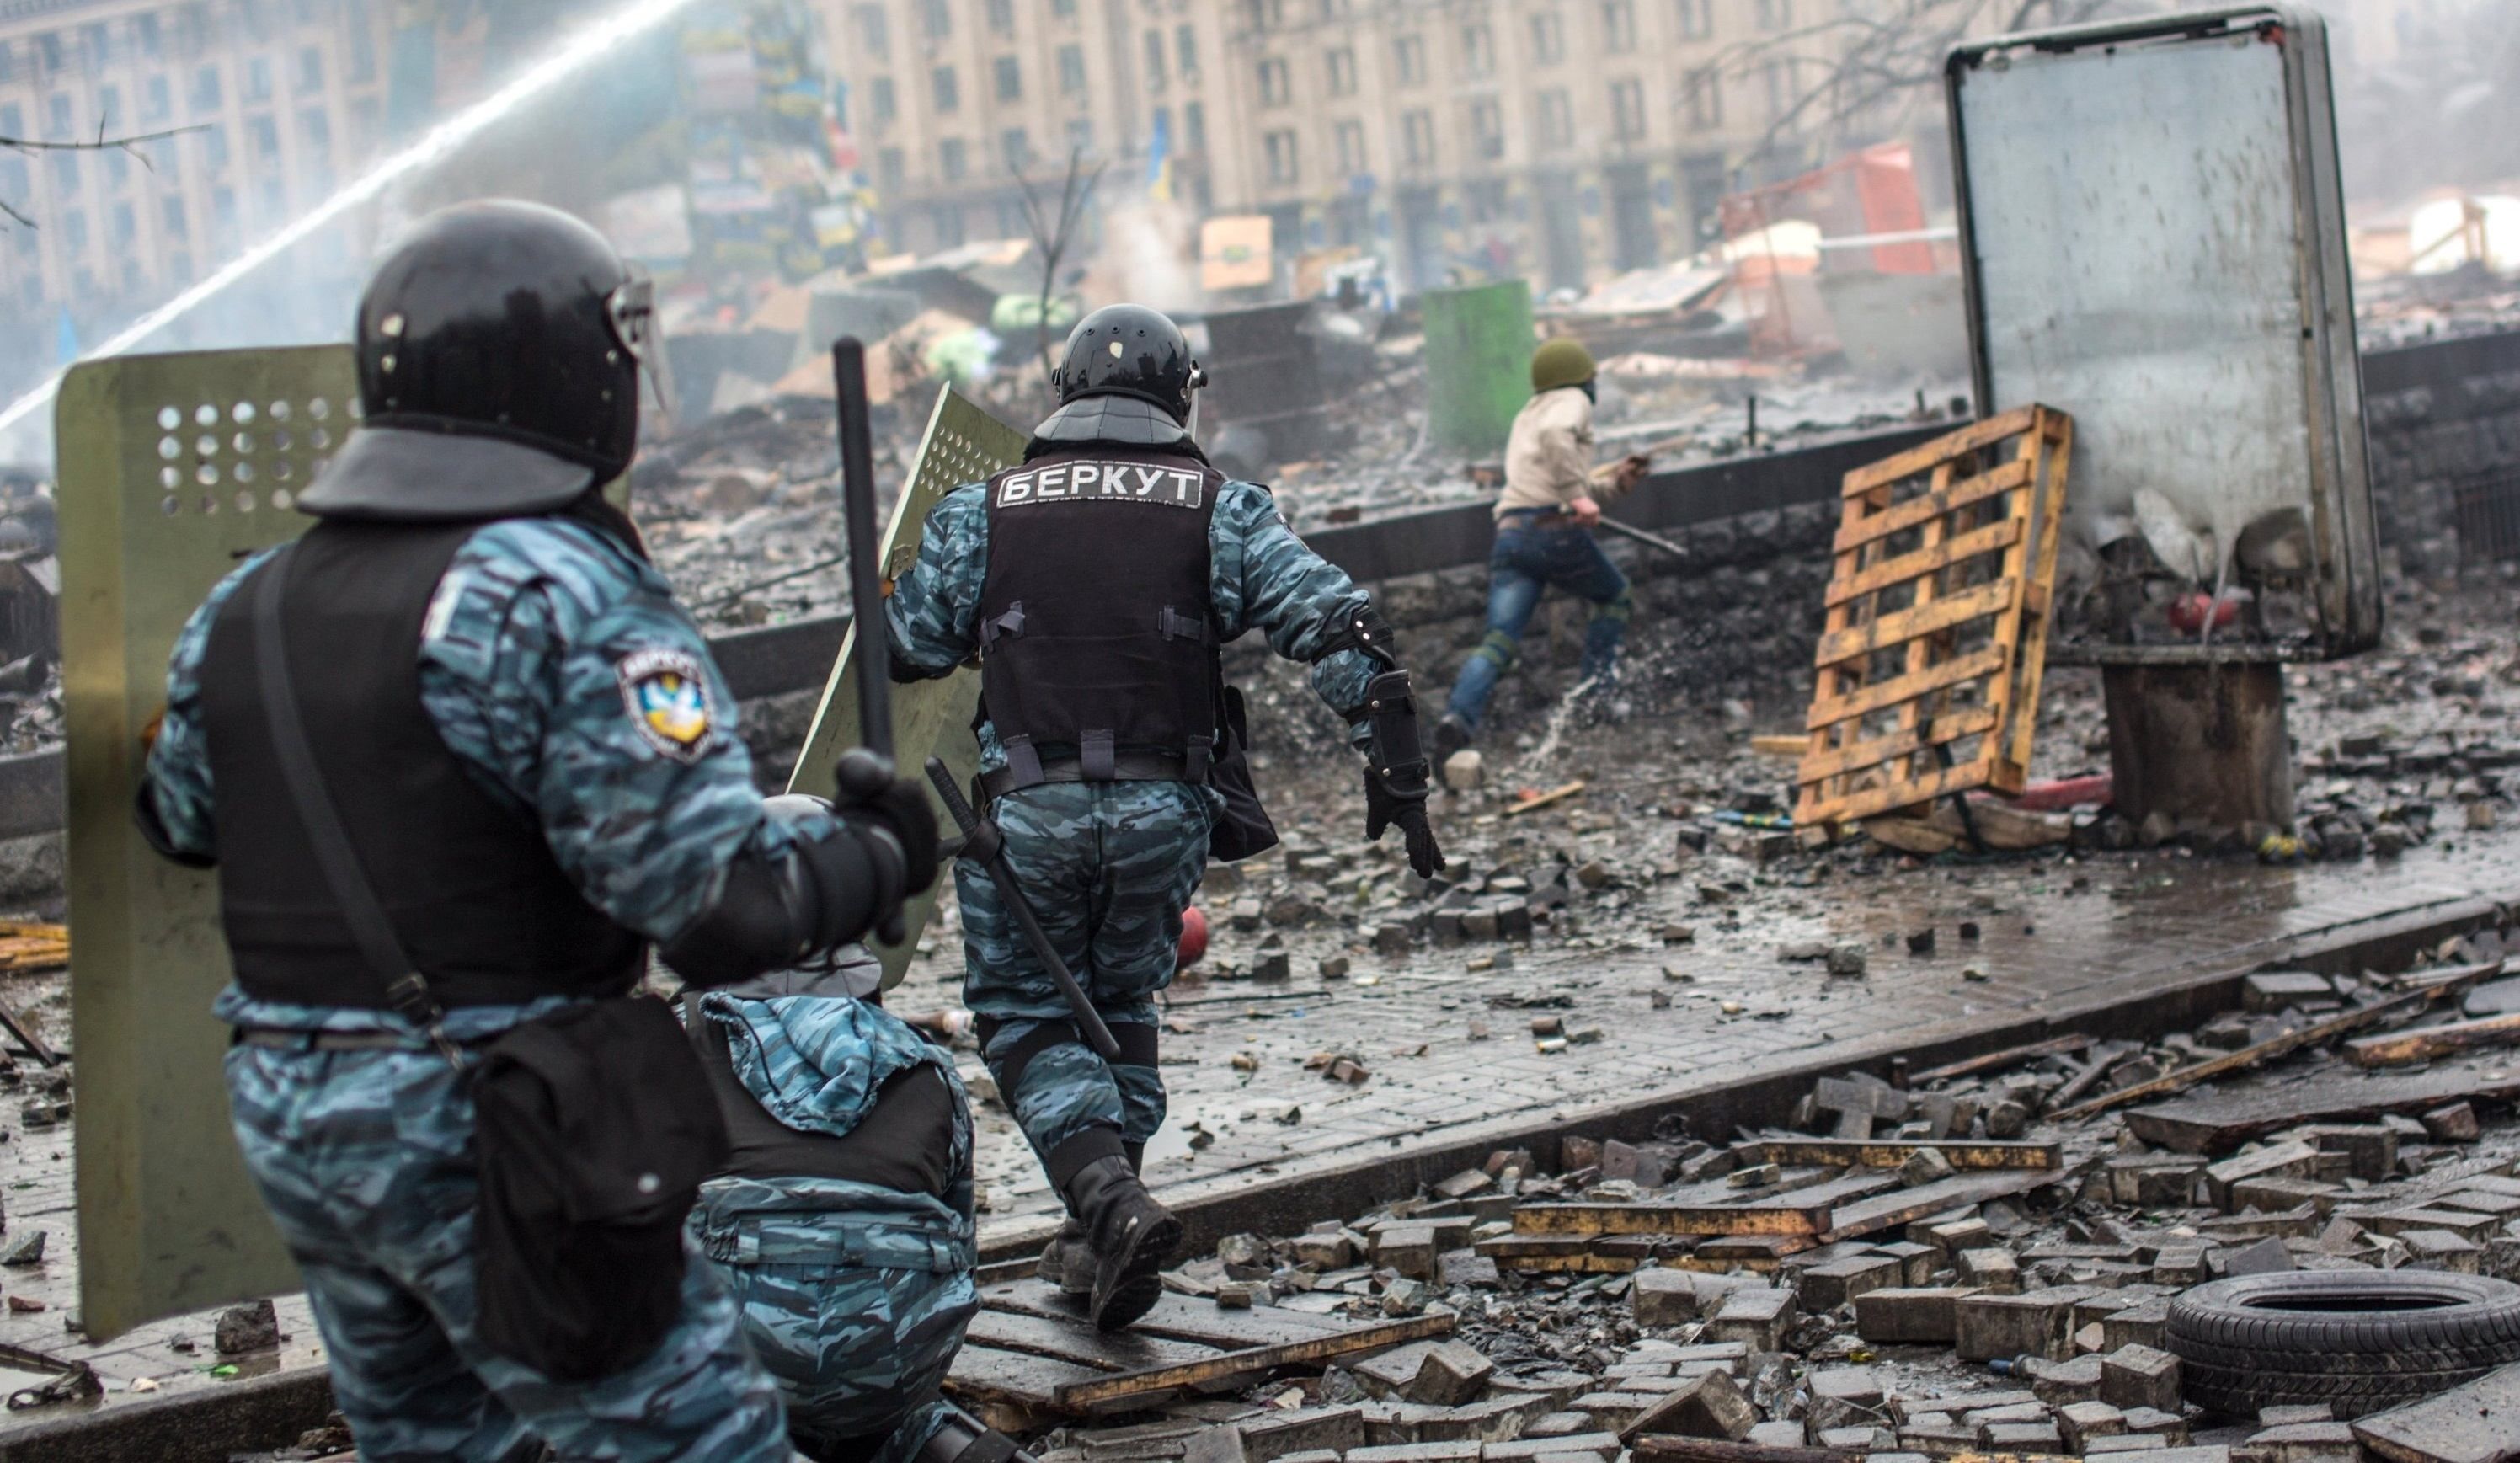 Так готували кривавий штурм Євромайдану: унікальне відео